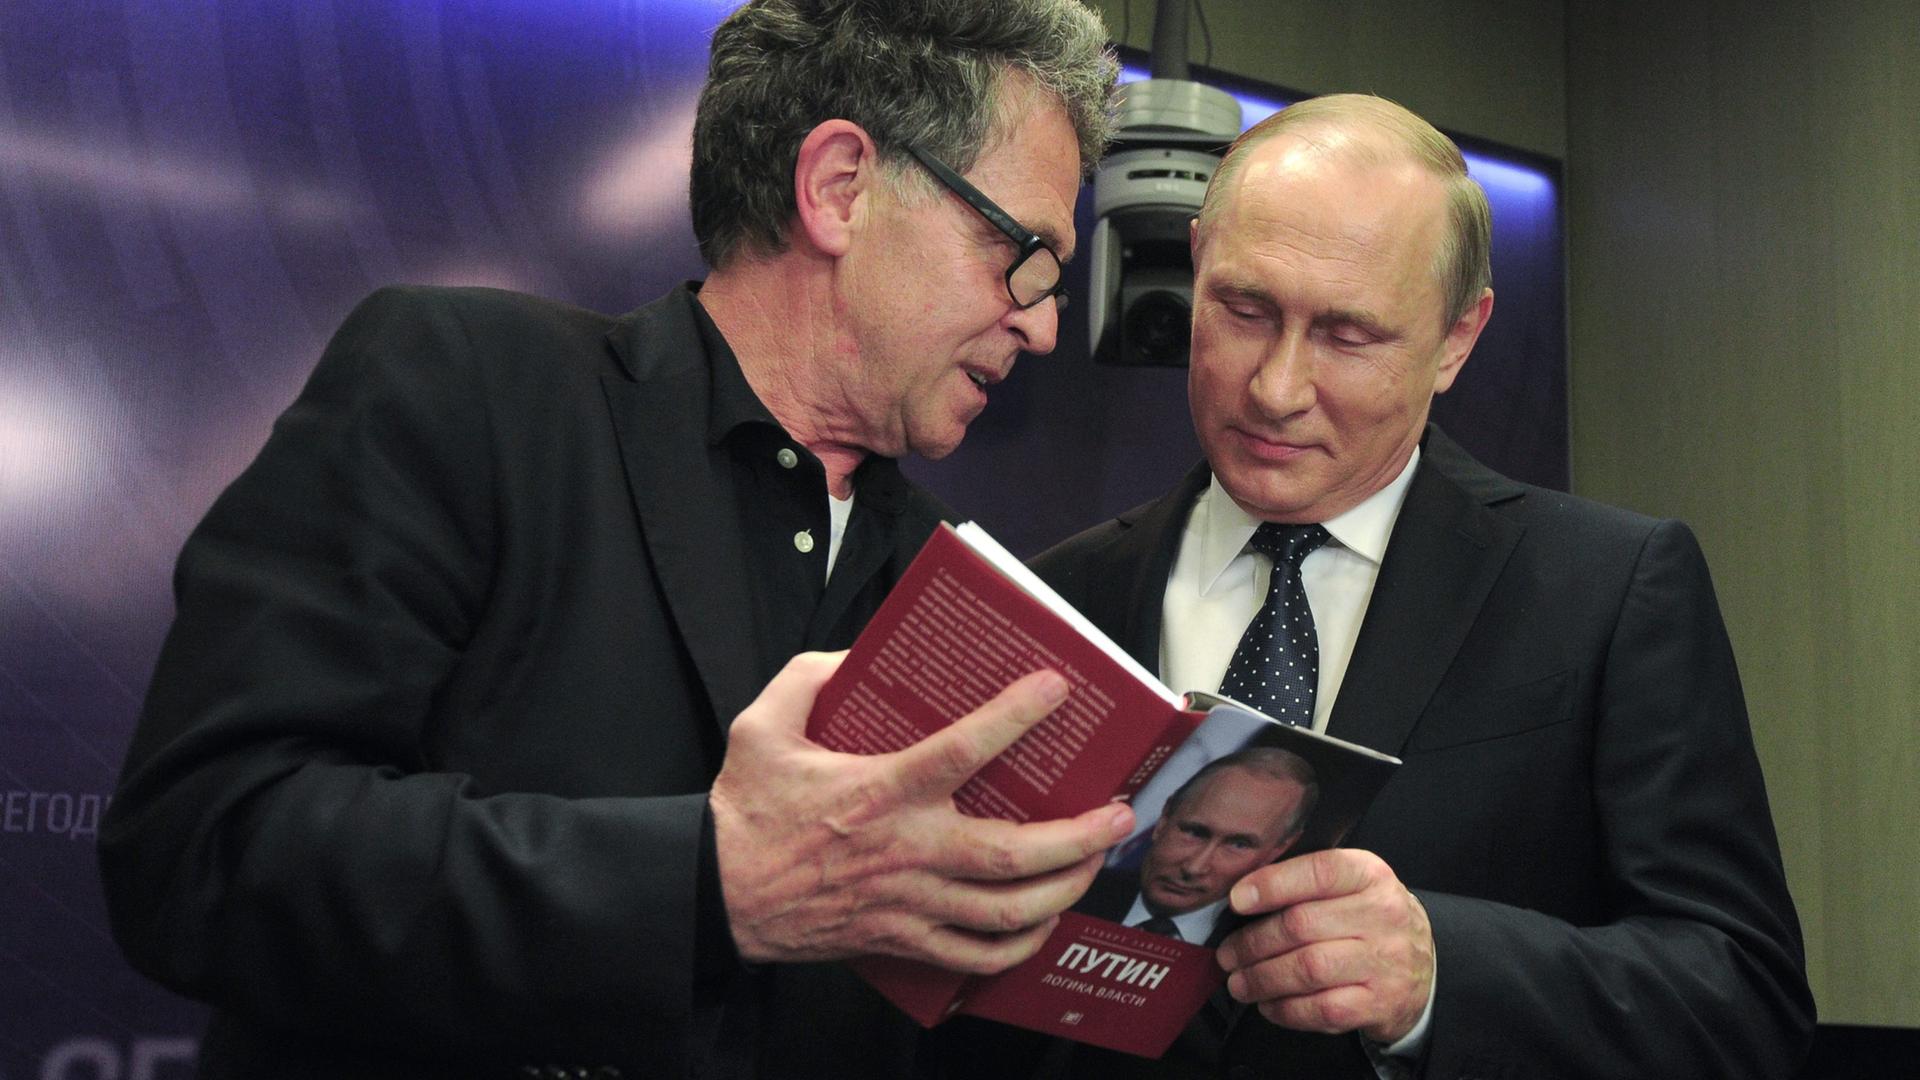 Buchautor Hubert Seipel steht neben dem russischen Präsidenten Wladimir Putin. Seipel hält ein aufgeschlagenes Buch in der Hand. 